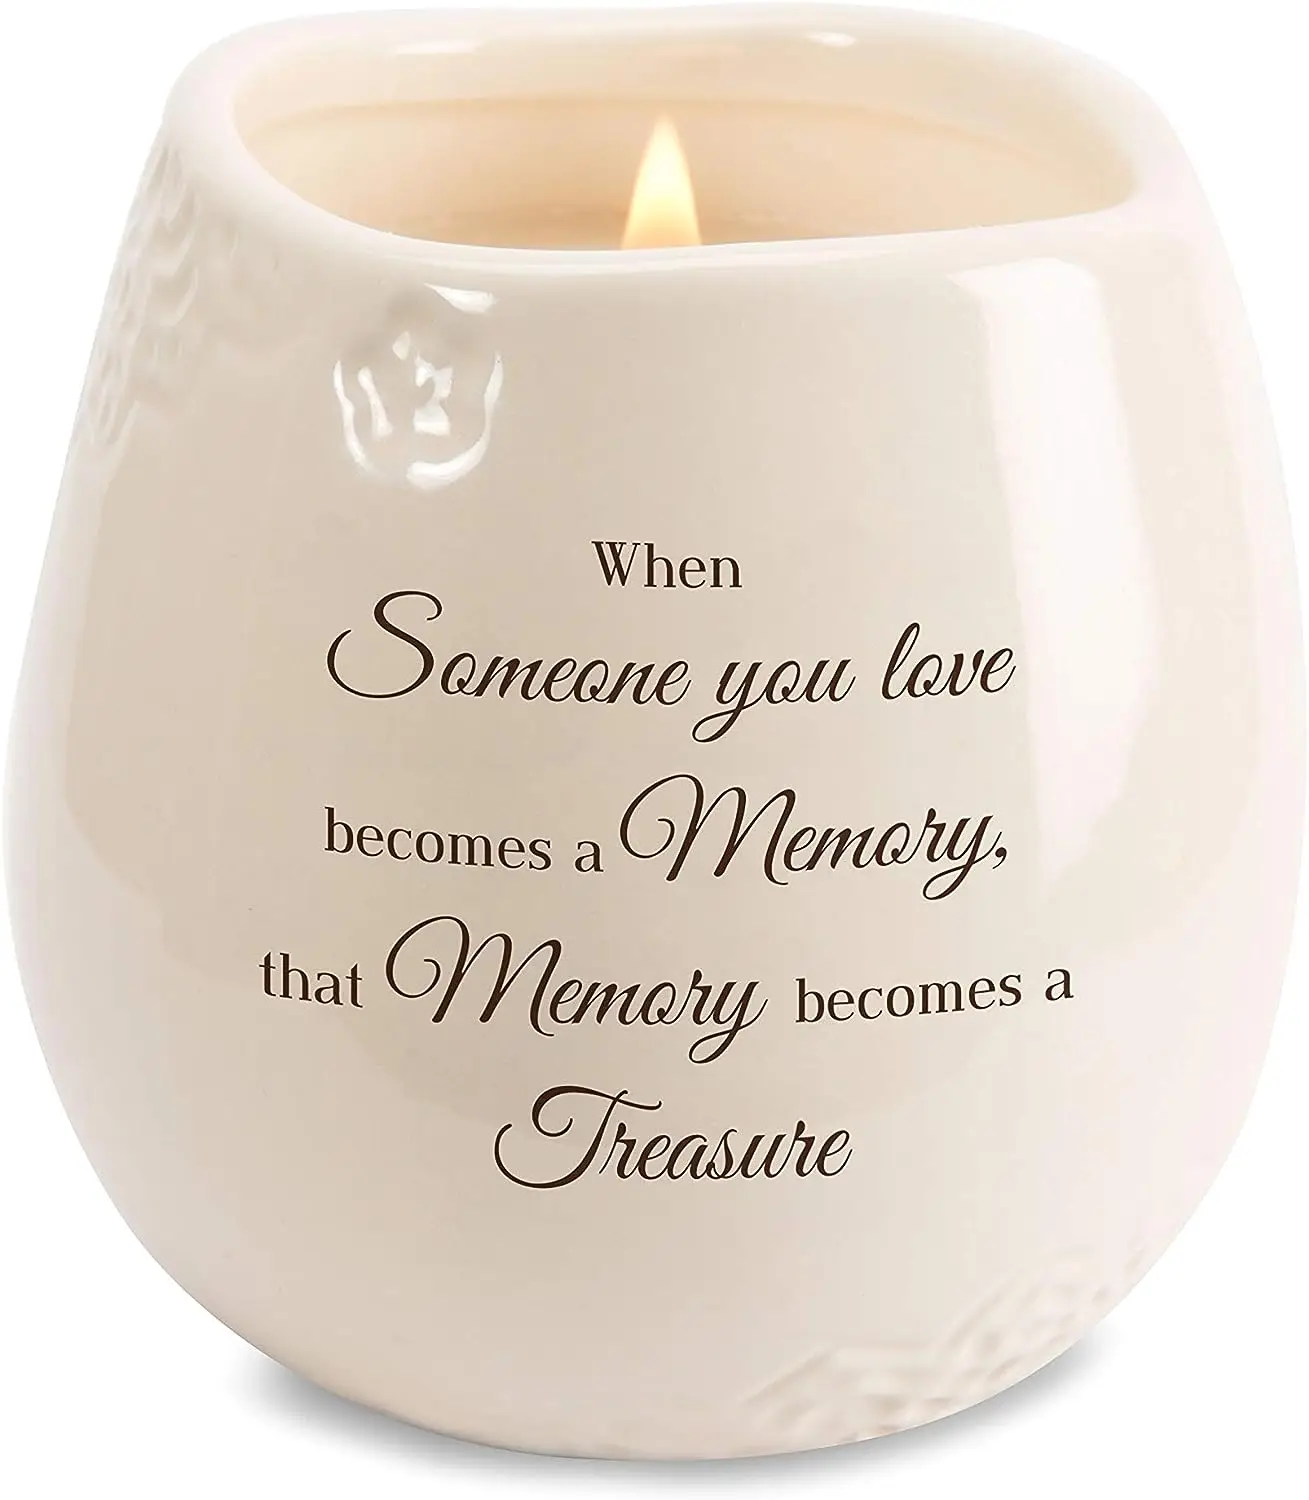 

-Когда кто-то, что вы любите, превращается в память, которая превращается в соевый керамический сосуд в свечи объемом 8 унций